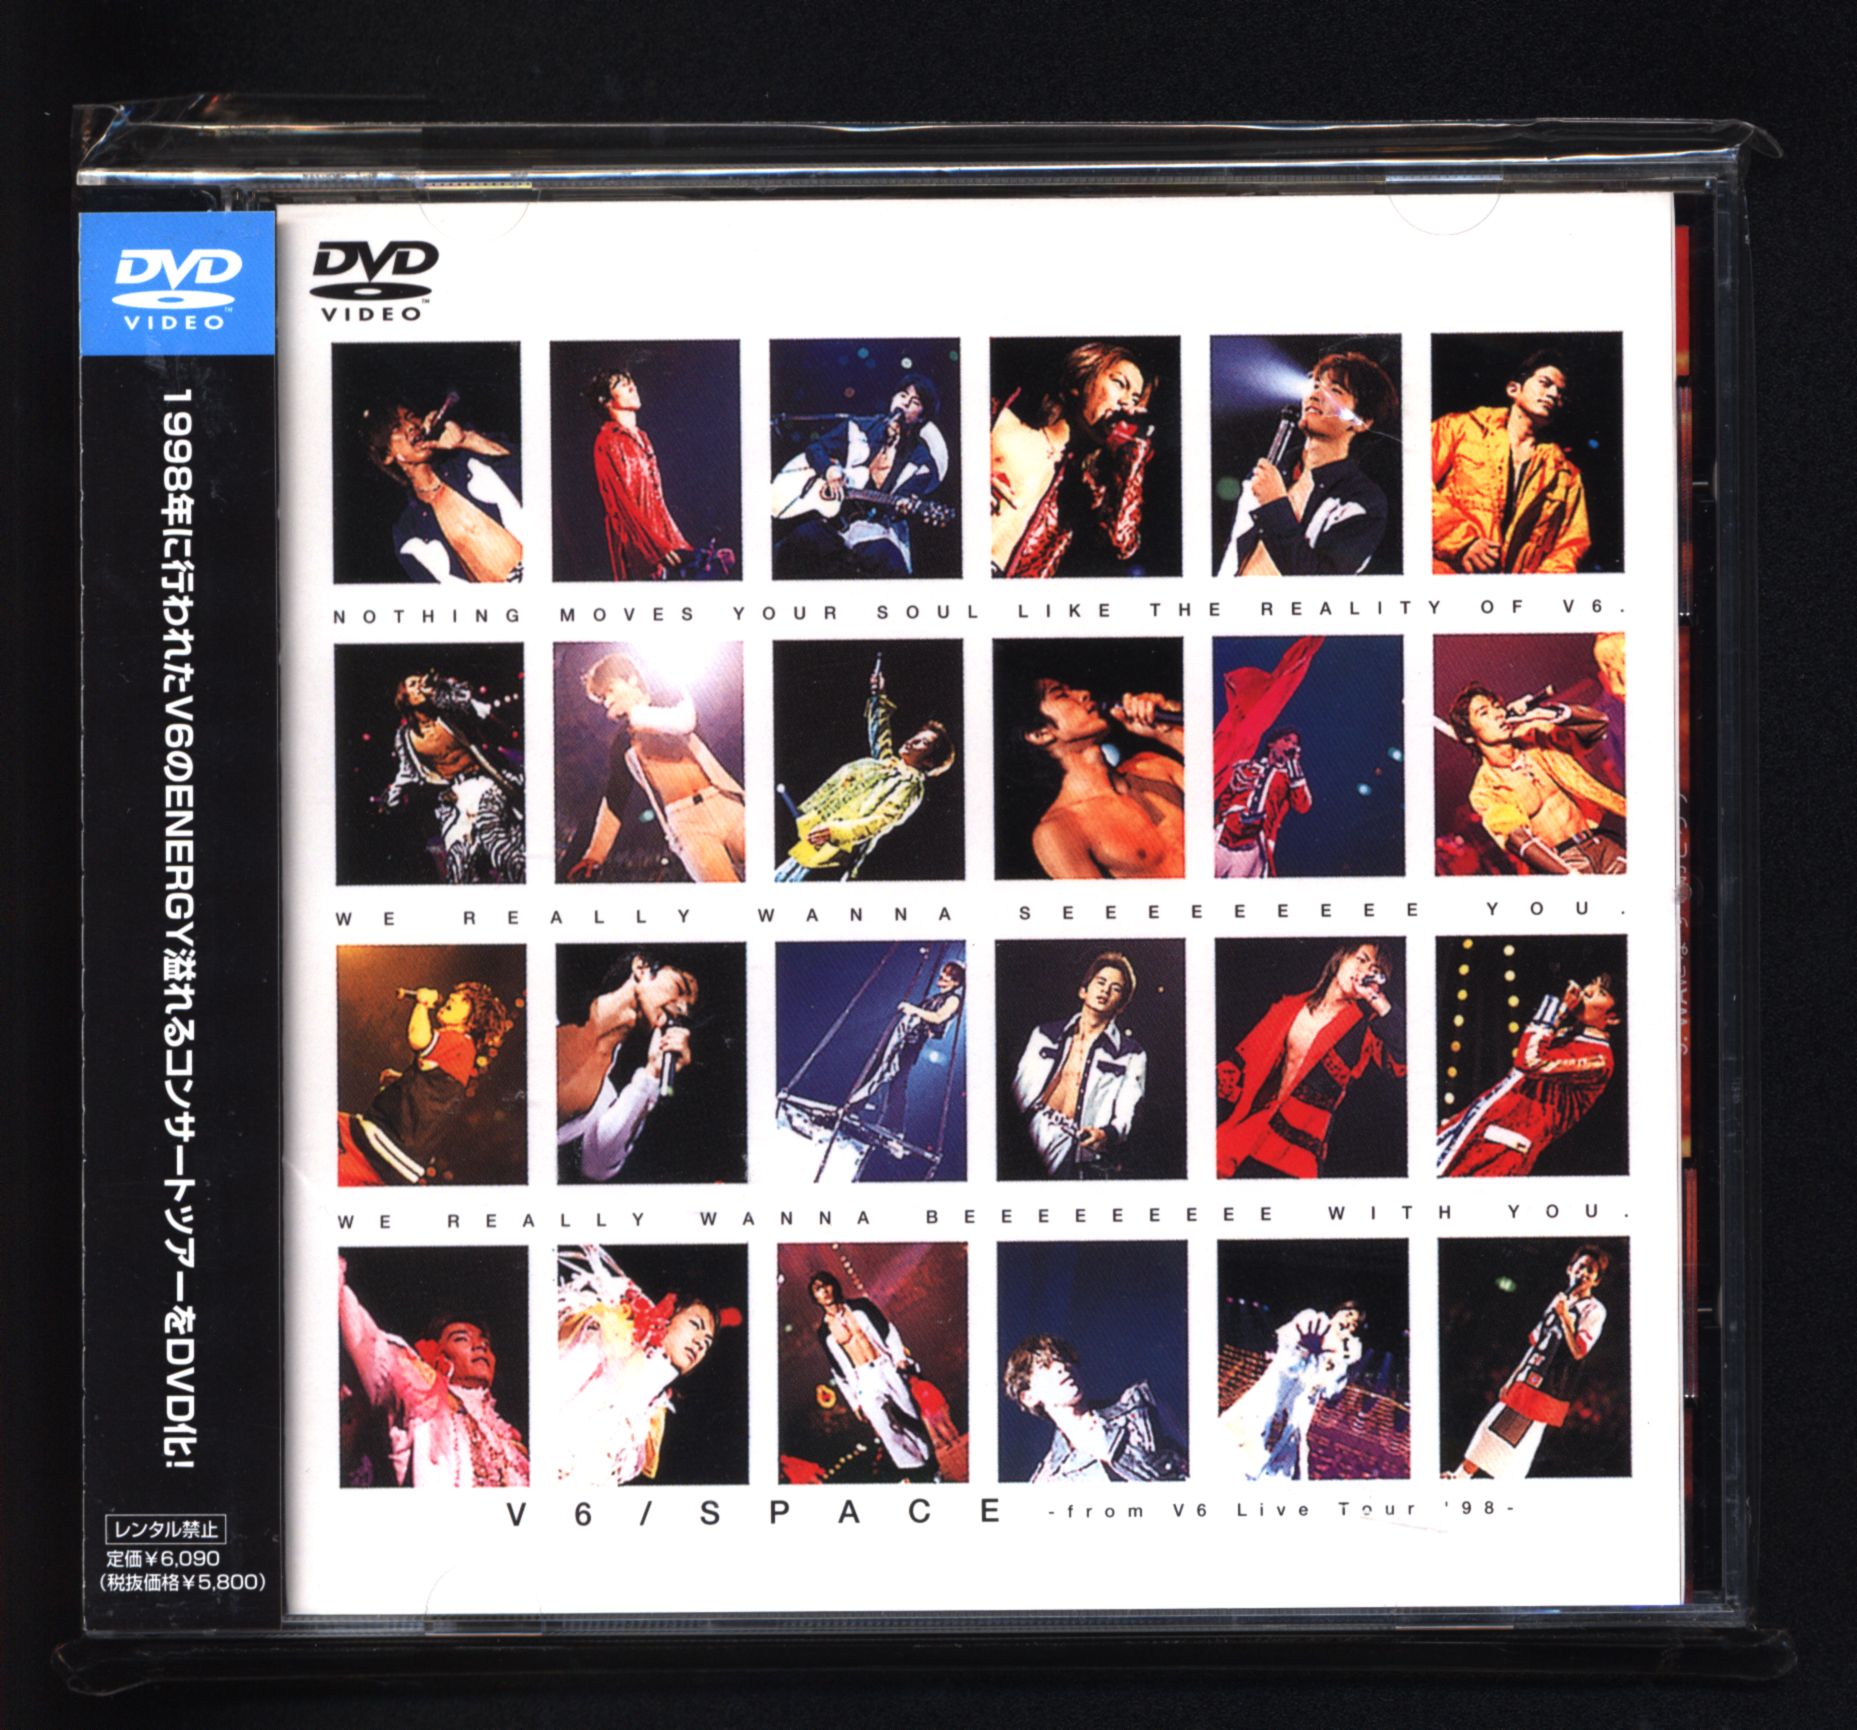 V6 DVD 「SPACE-from V6 Live Tour'98-」 | Mandarake Online Shop